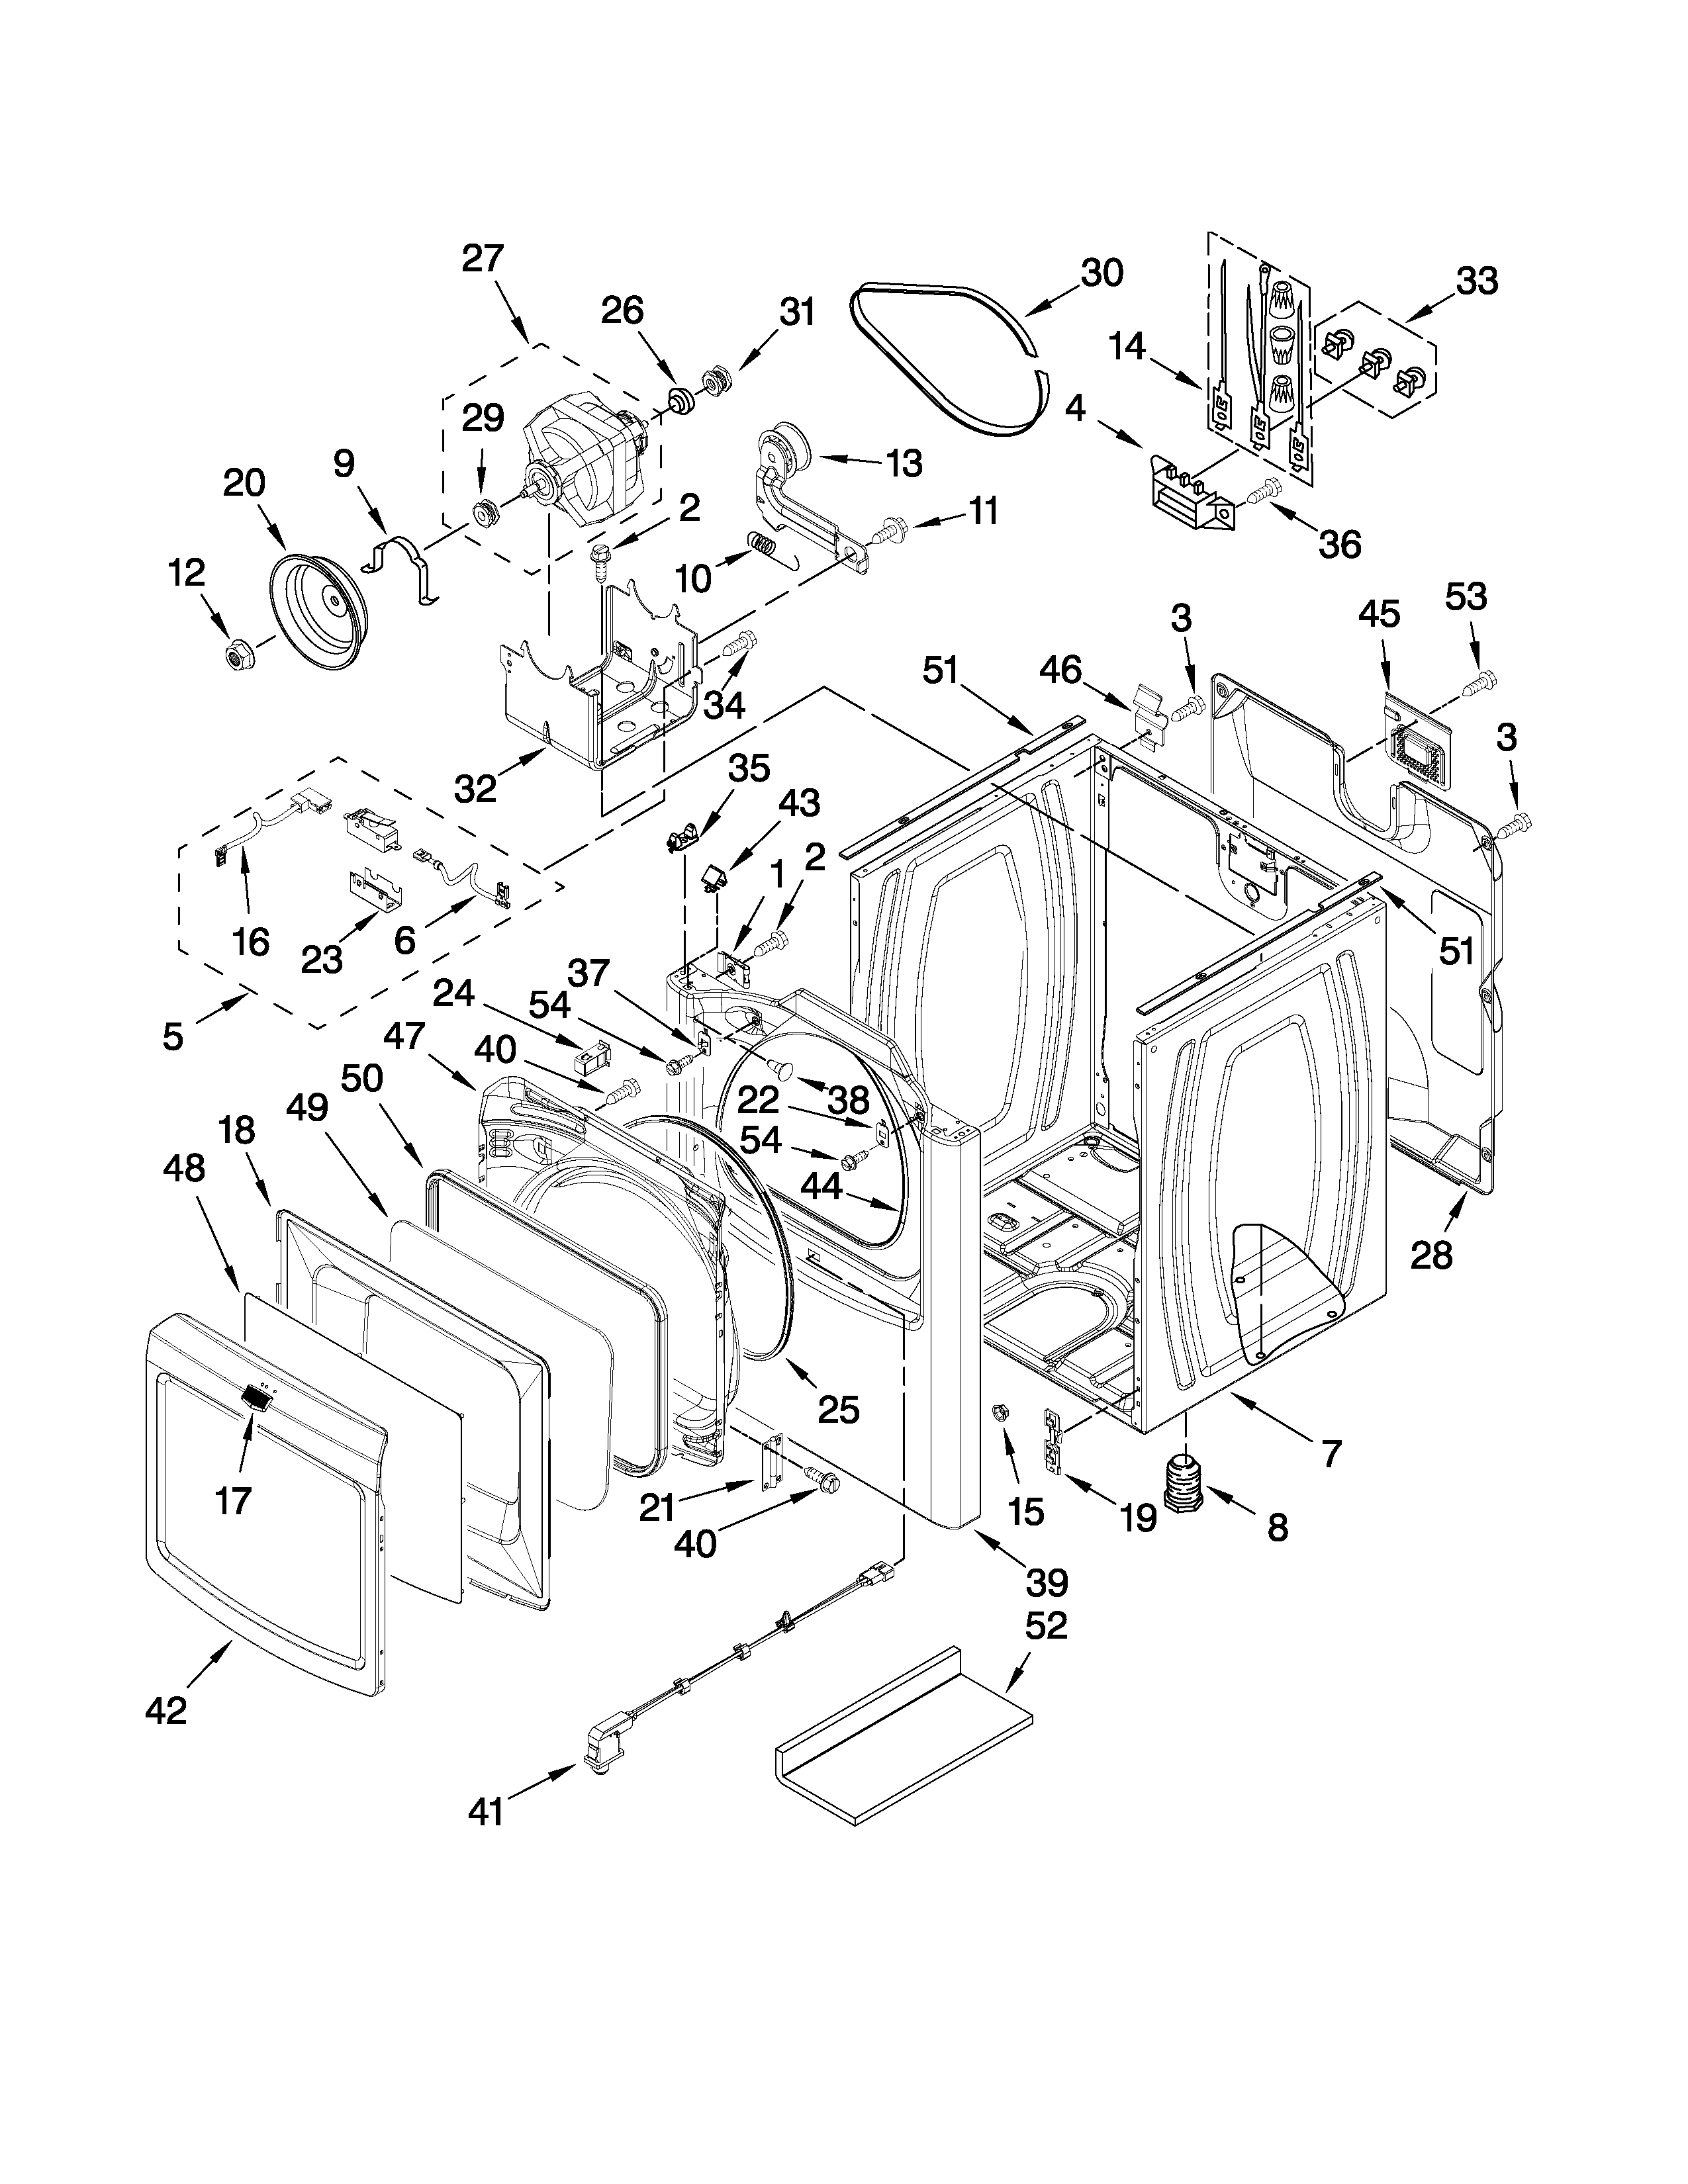 Cabinet Parts Diagram  U0026 Parts List For Model Medb850wq0